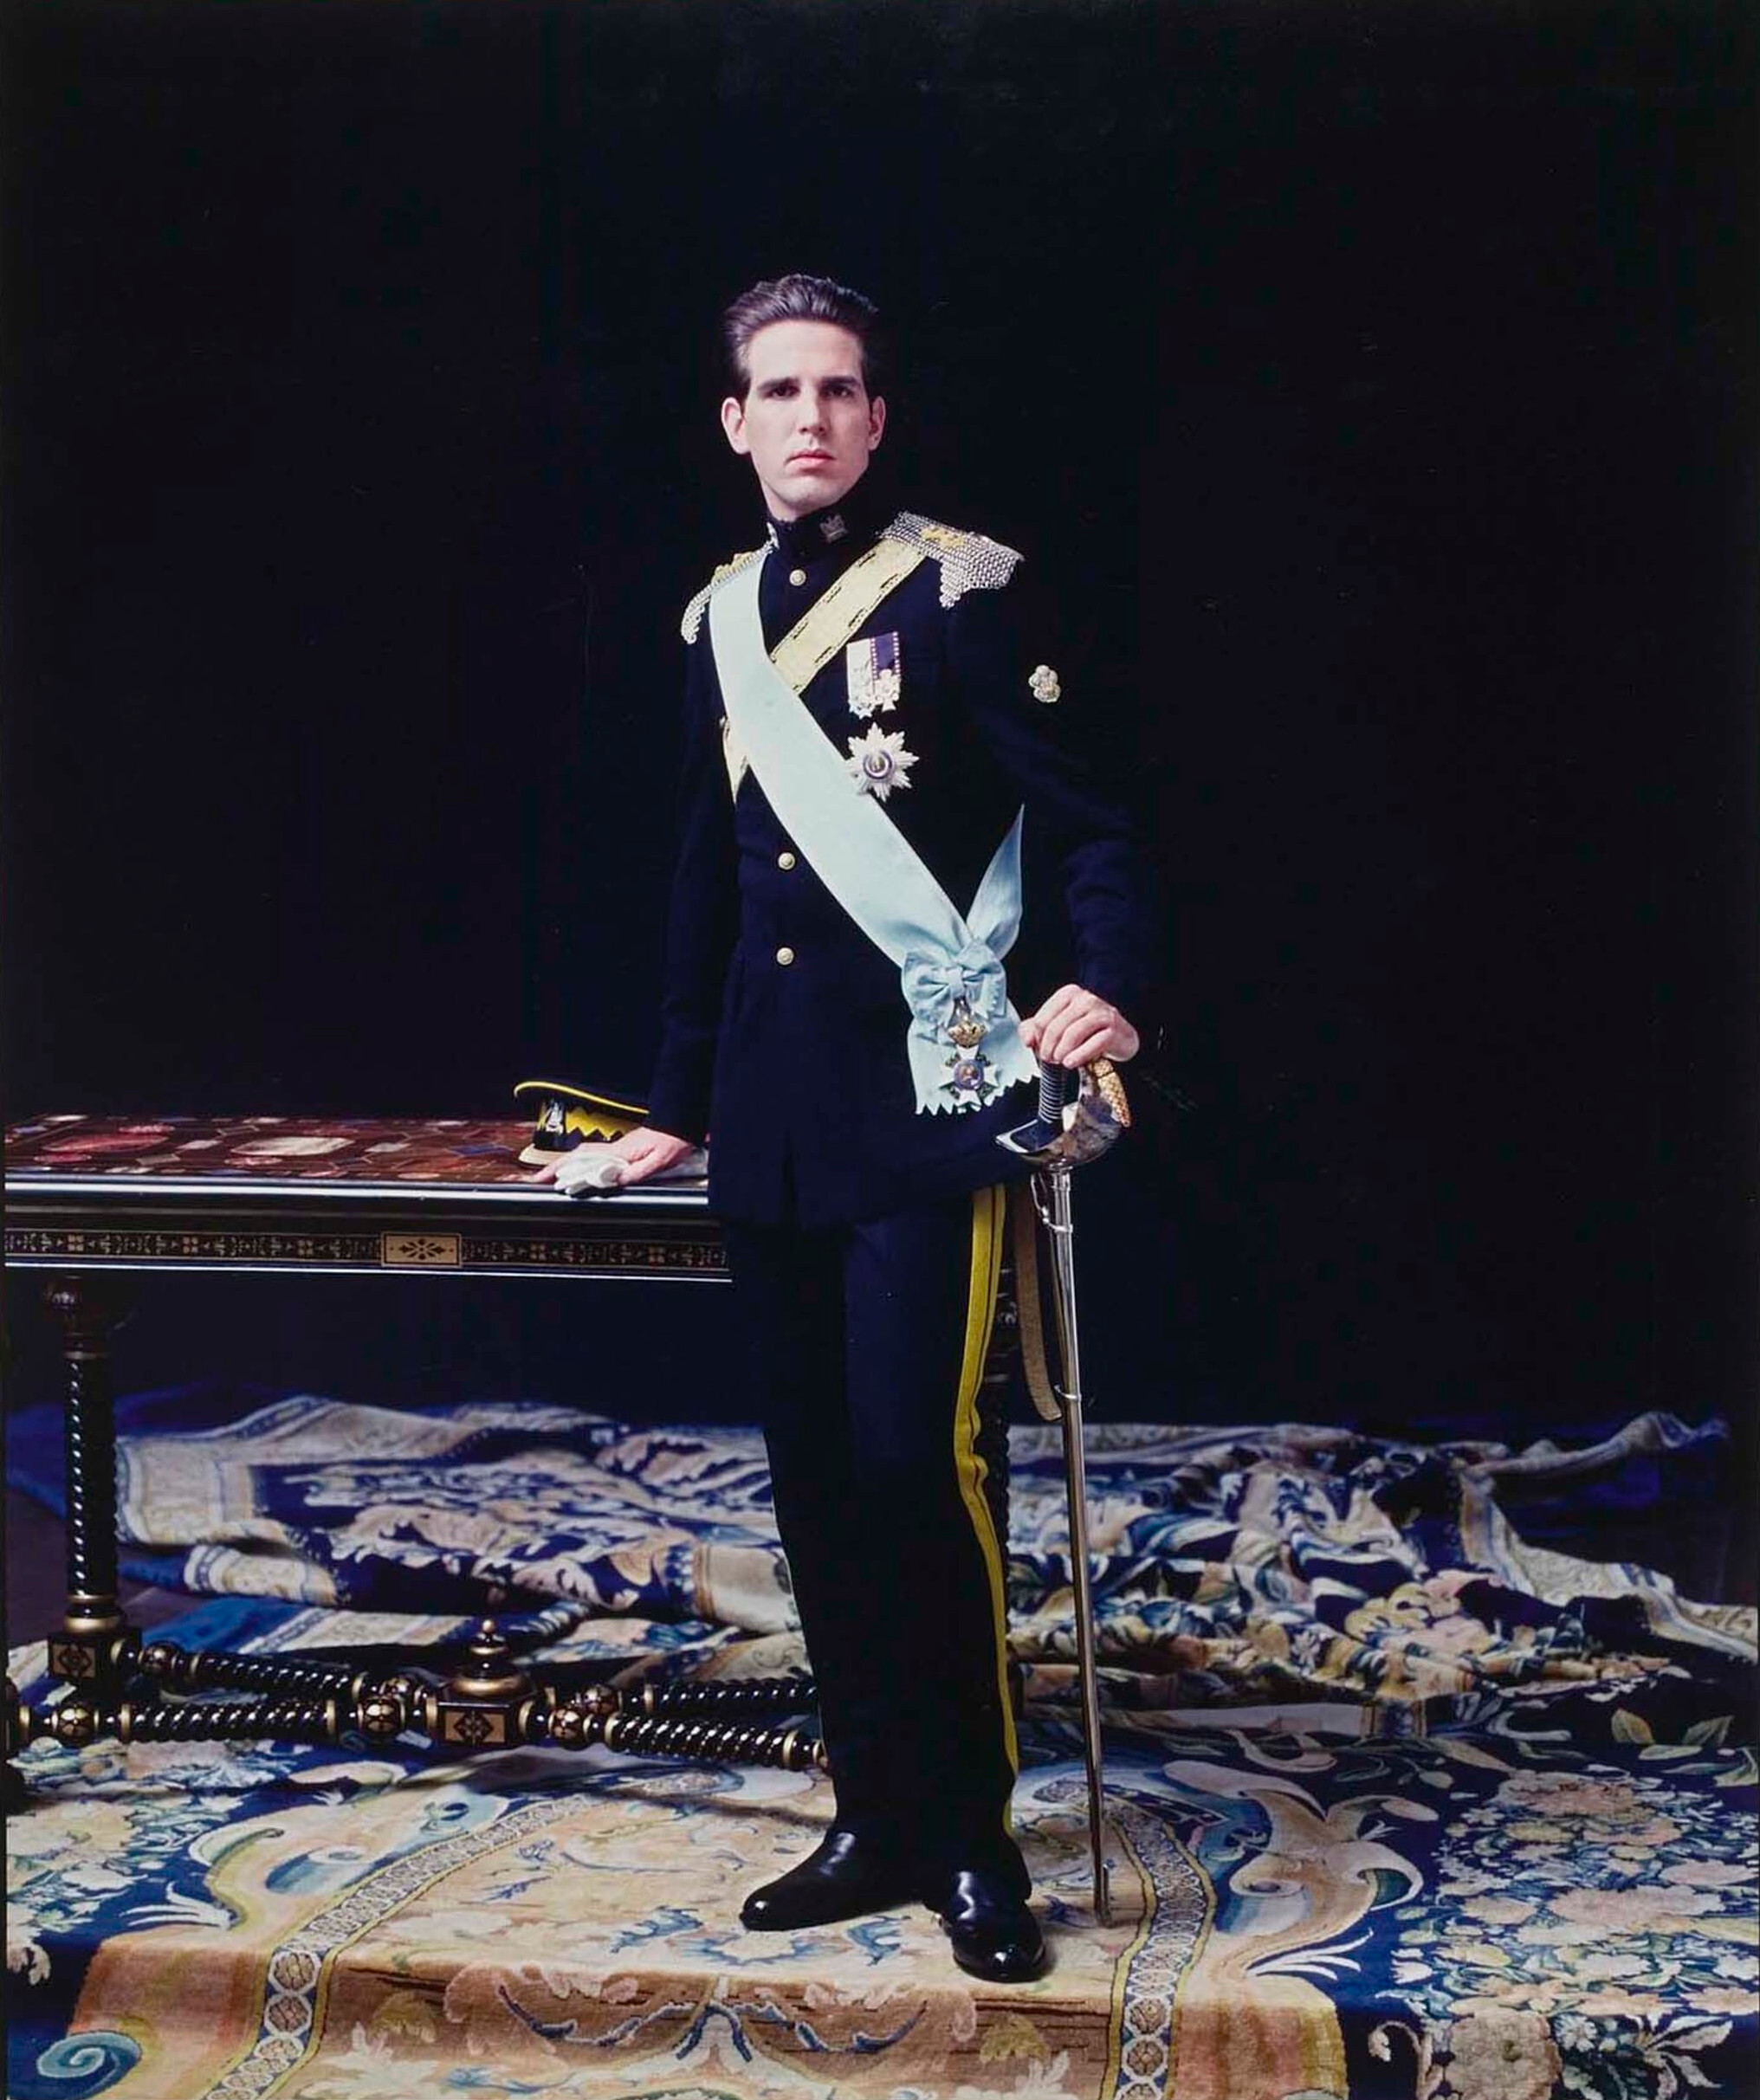 Павлос, принц Греции, 1994 г. Фотограф Дэвид Сайднер